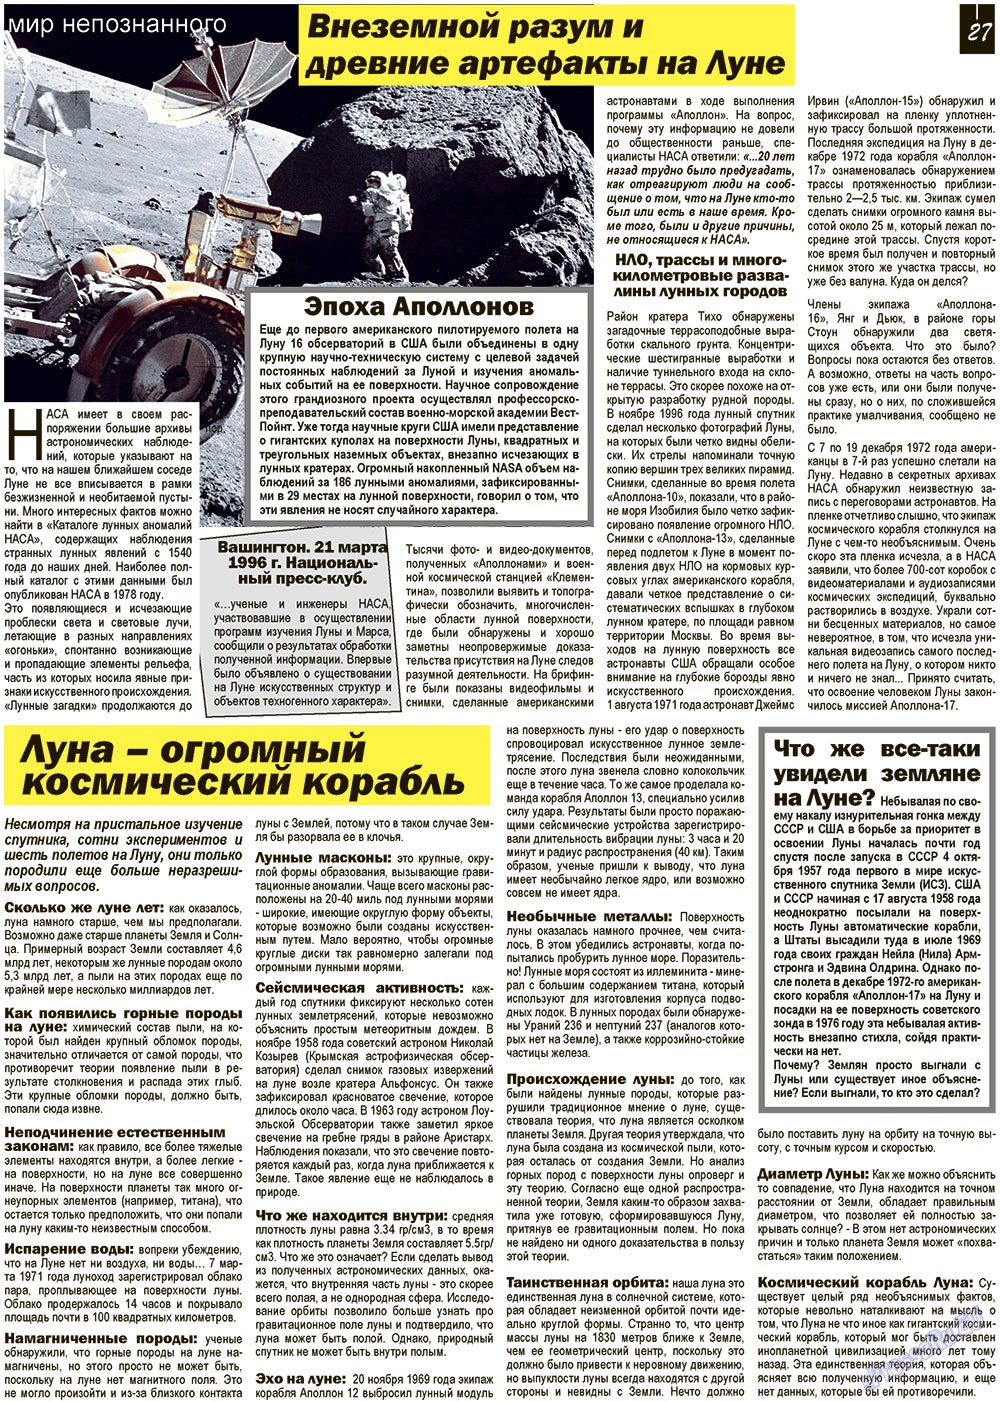 Все pro все, газета. 2012 №18 стр.27